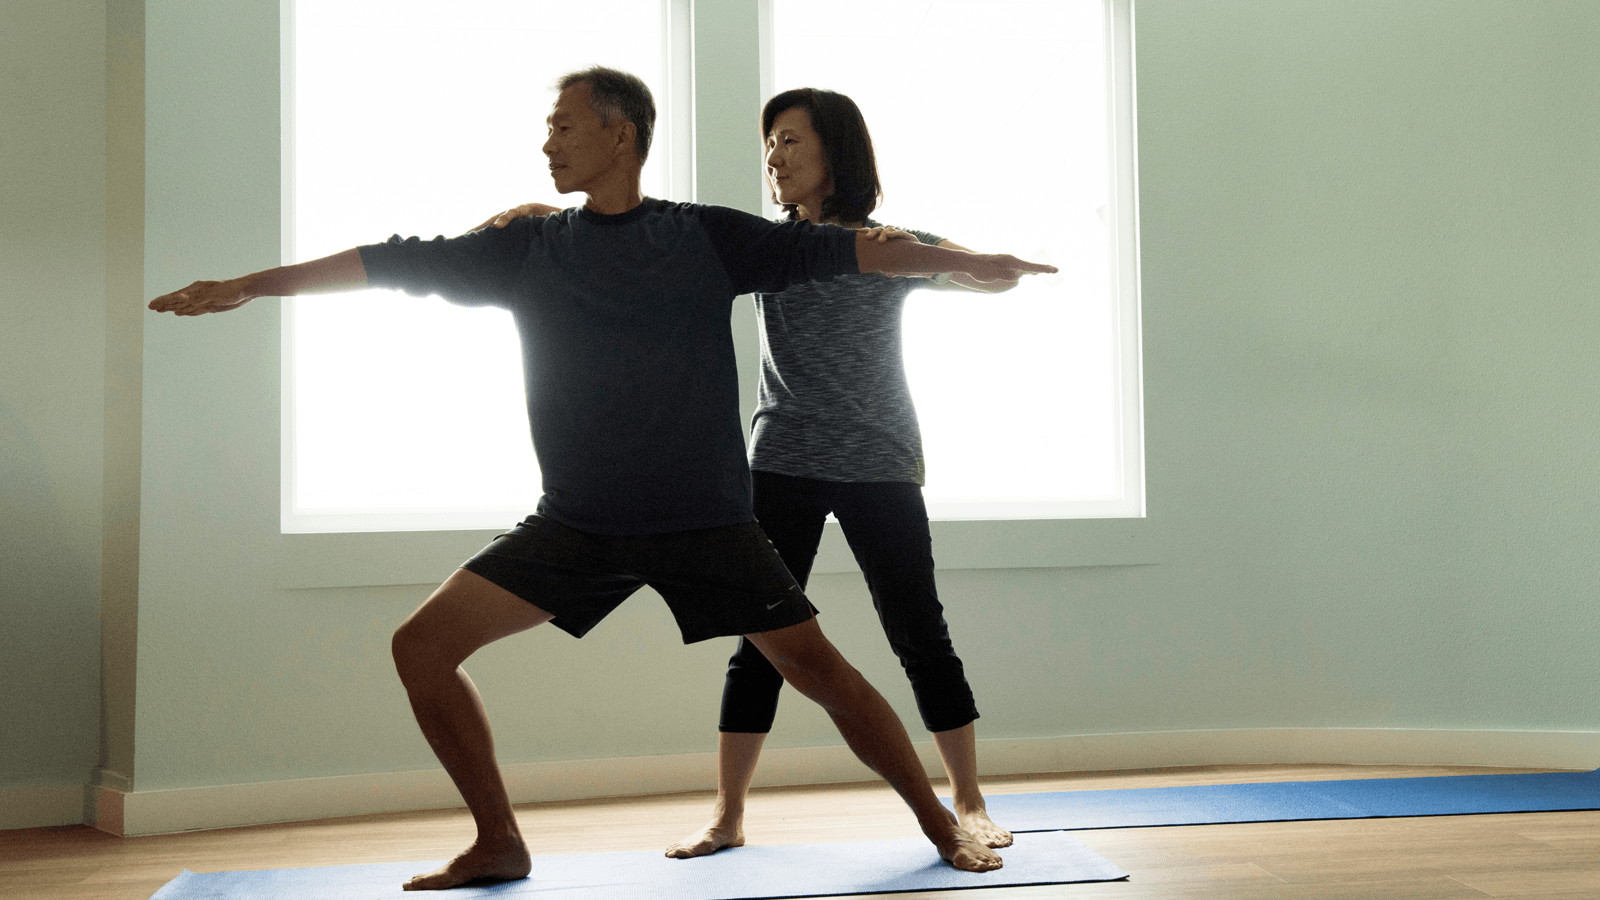 Lợi ích của yoga đối với sức khỏe là điều không cần phải bàn cãi quá nhiều bởi tính chất phổ biến của môn thể thao nhẹ nhàng này. Dù vậy, không phải ai cũng hiểu rõ ngọn nguồn mọi lợi ích của yoga và cách tập luyện làm sao phát huy hiệu quả tối đa.